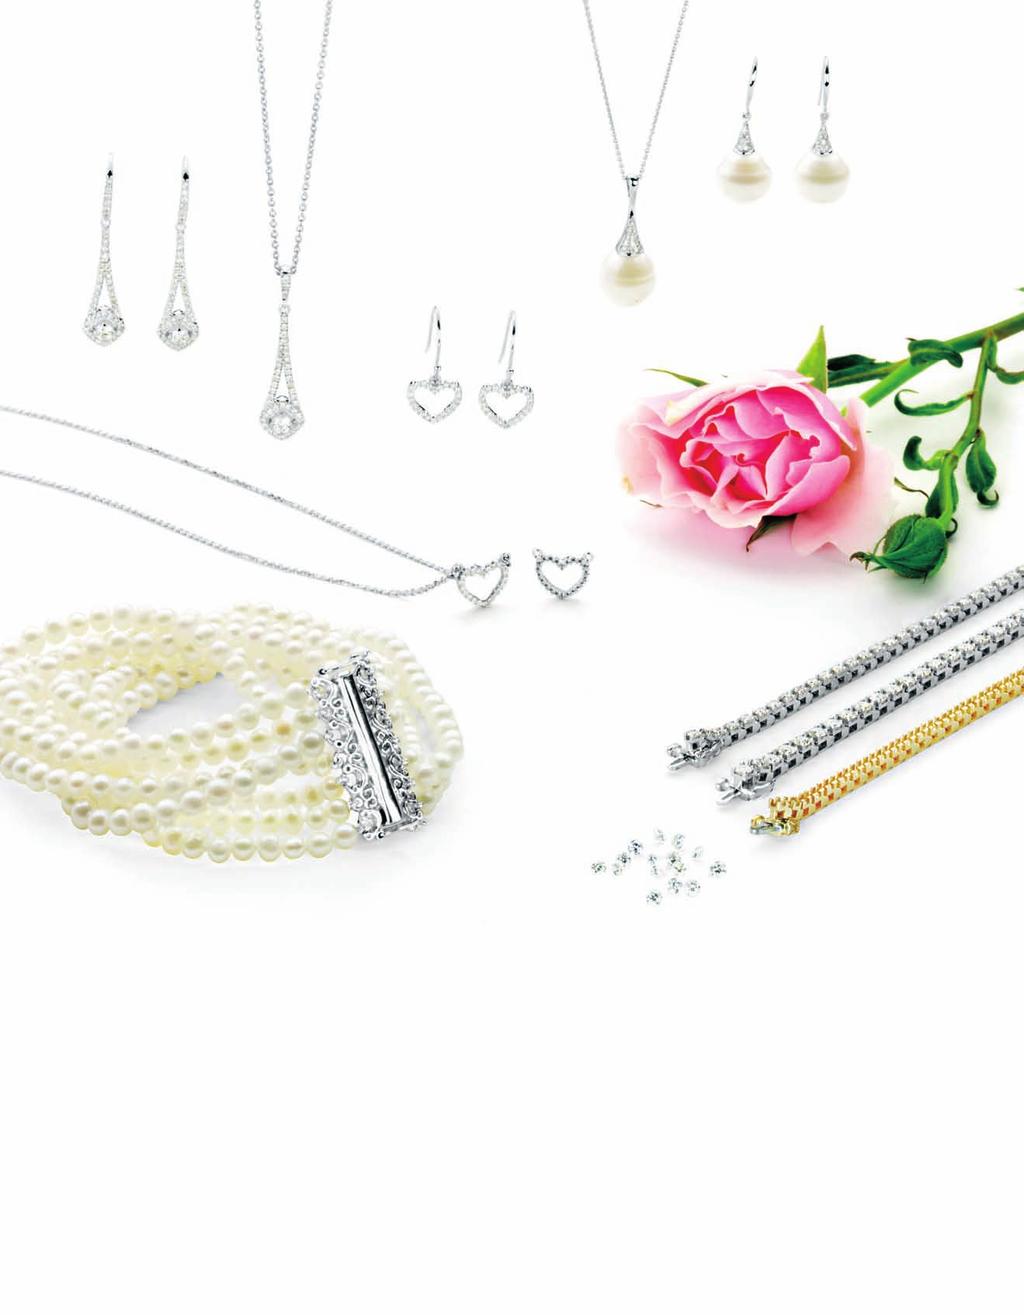 G F A B C D E H L J K Diamonds & Pearls for the bride & her girls A. 67101 Diamond Earrings, 3/4 ct tw, 14kt white, 33 $2,071 per pair. B. 67087 Diamond Necklace, 3/8 ct tw, 14kt white, 33, 18 $1,400.